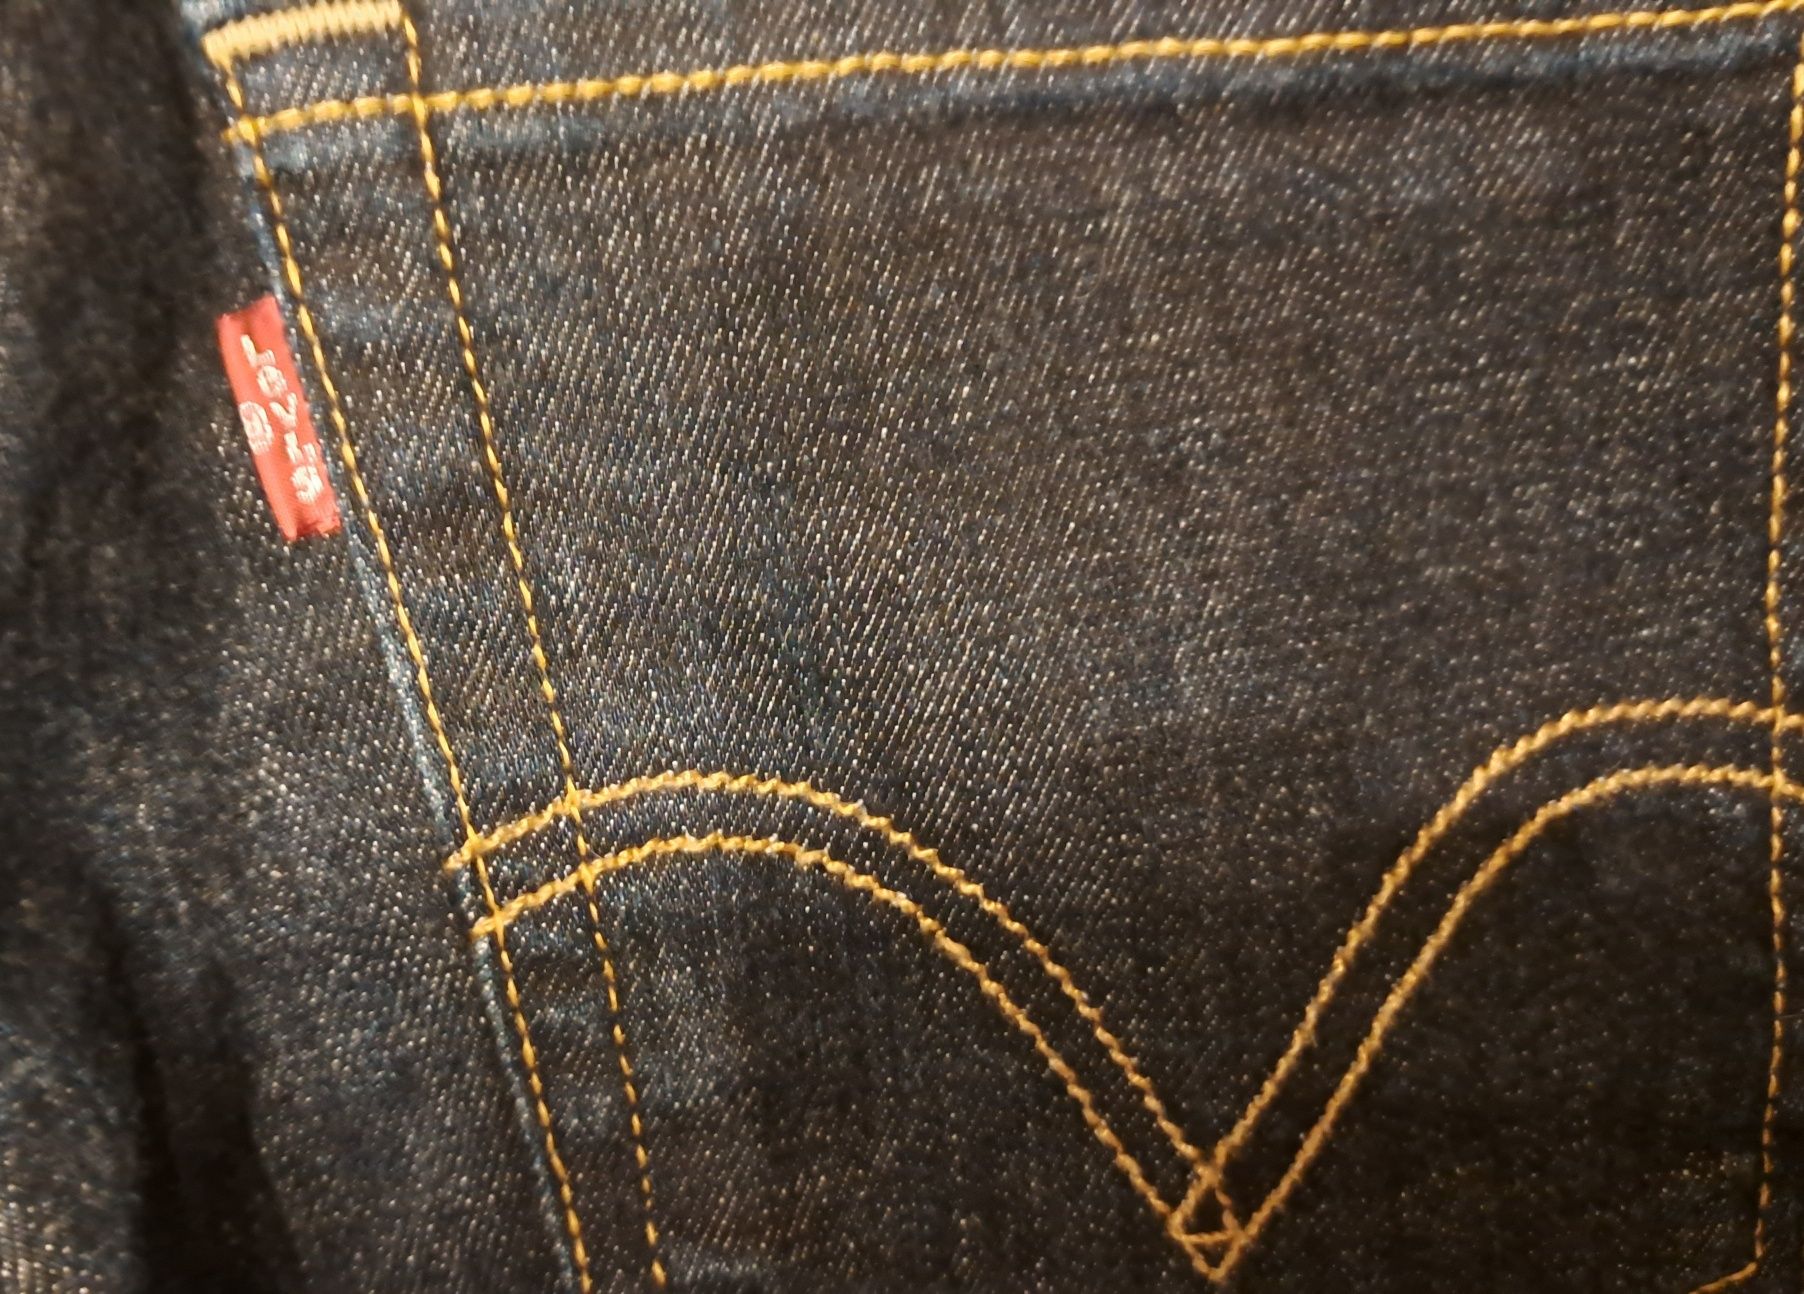 Oryginalne spodnie jeansy Levis Strauss 30/32 M
Rozmiar z metki 30/32